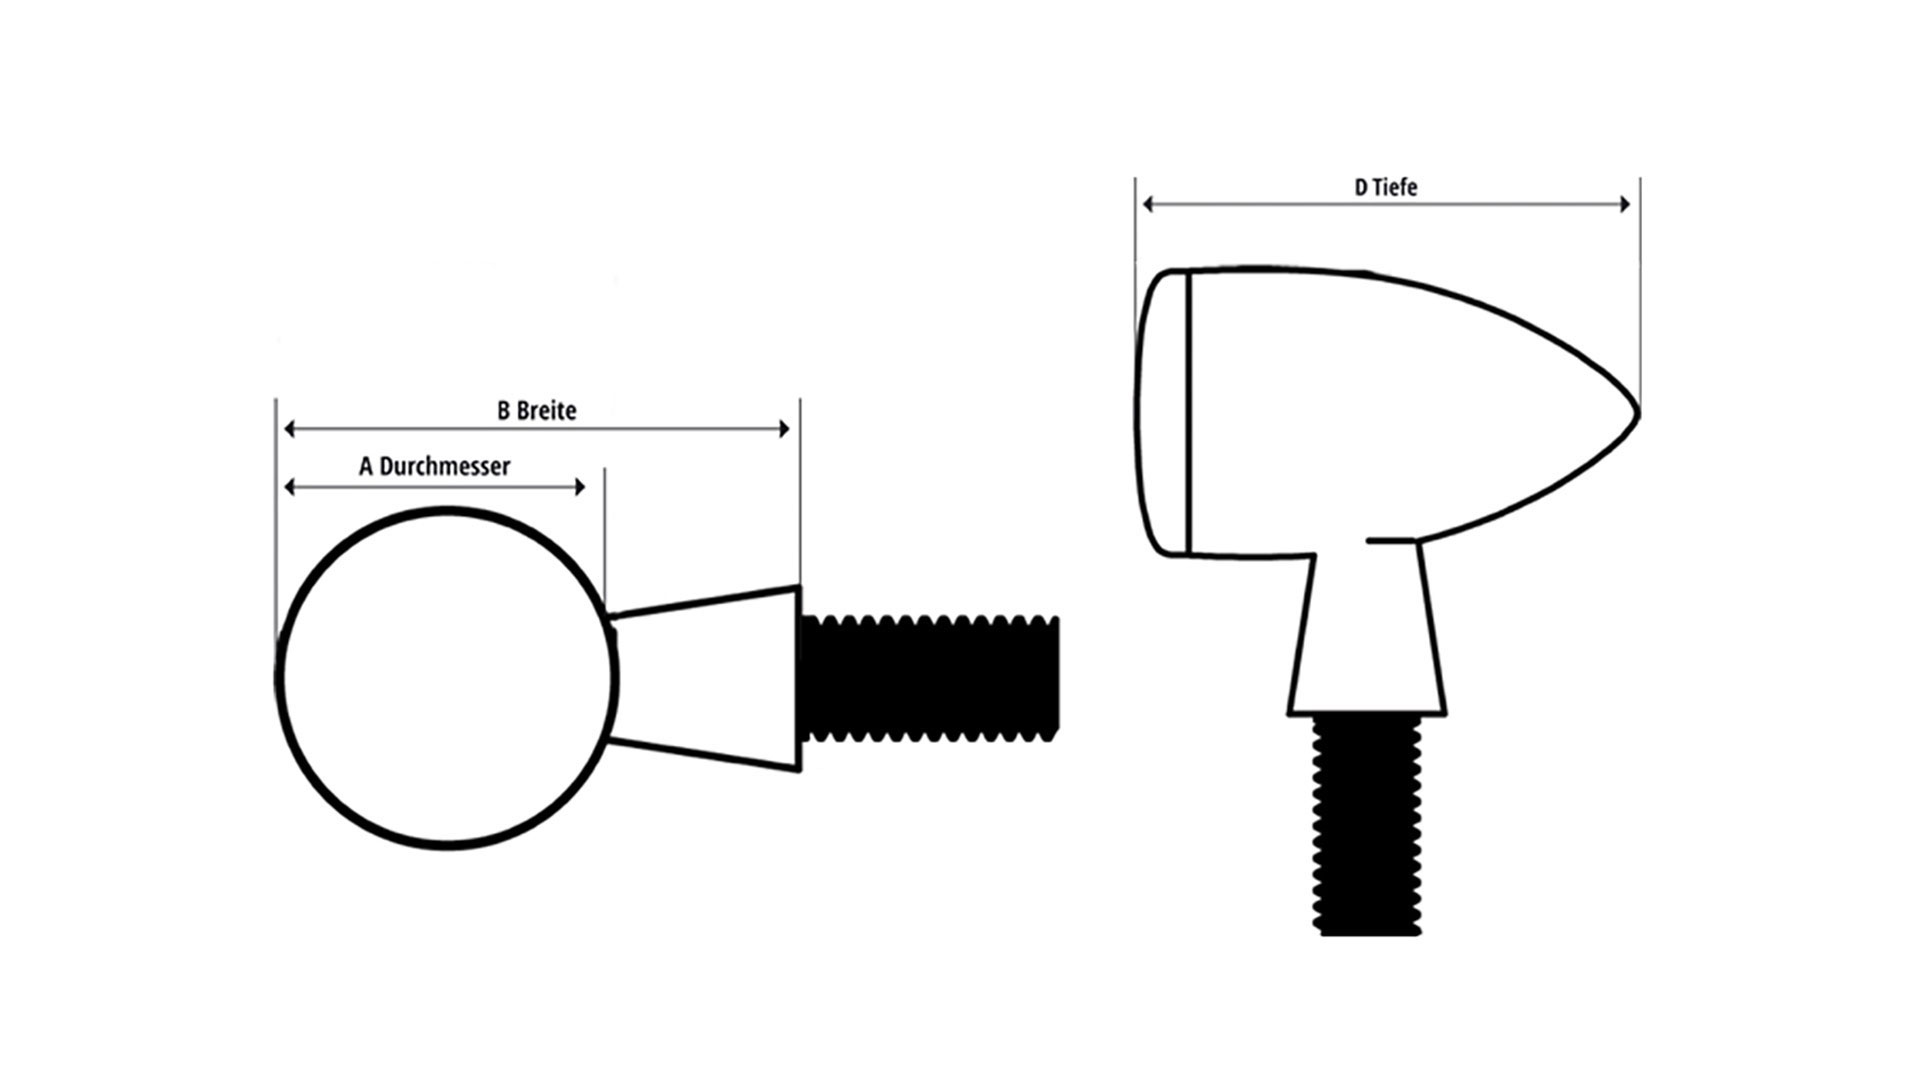 HIGHSIDER APOLLO Modul LED Blinker/Positionsleuchten